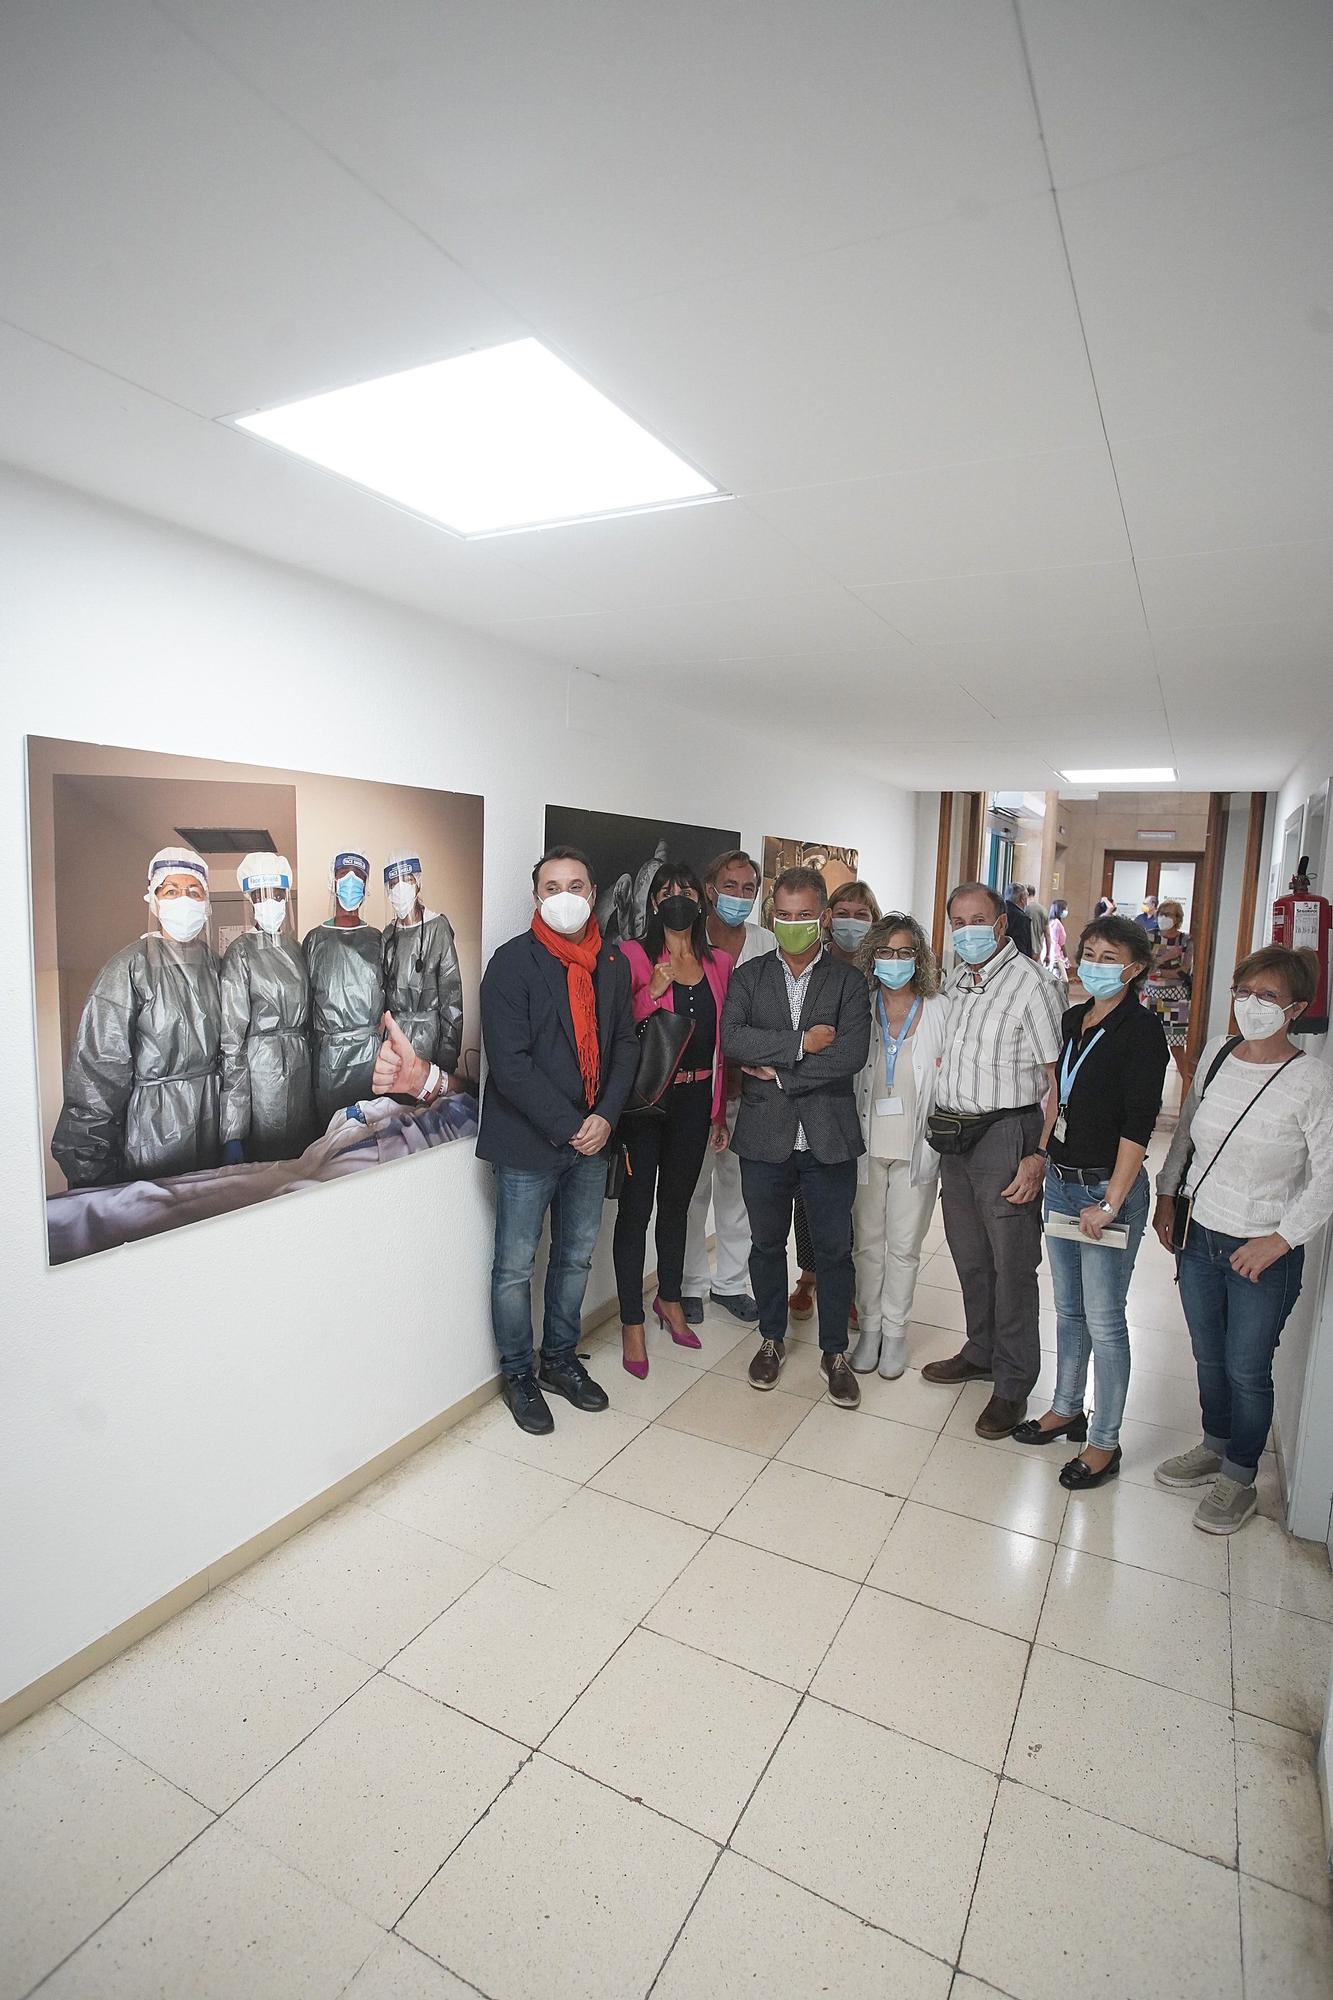 Exposició d'homenatge als sanitaris dels últims 40 anys amb imatge del fotoperiodista Tino Soriano